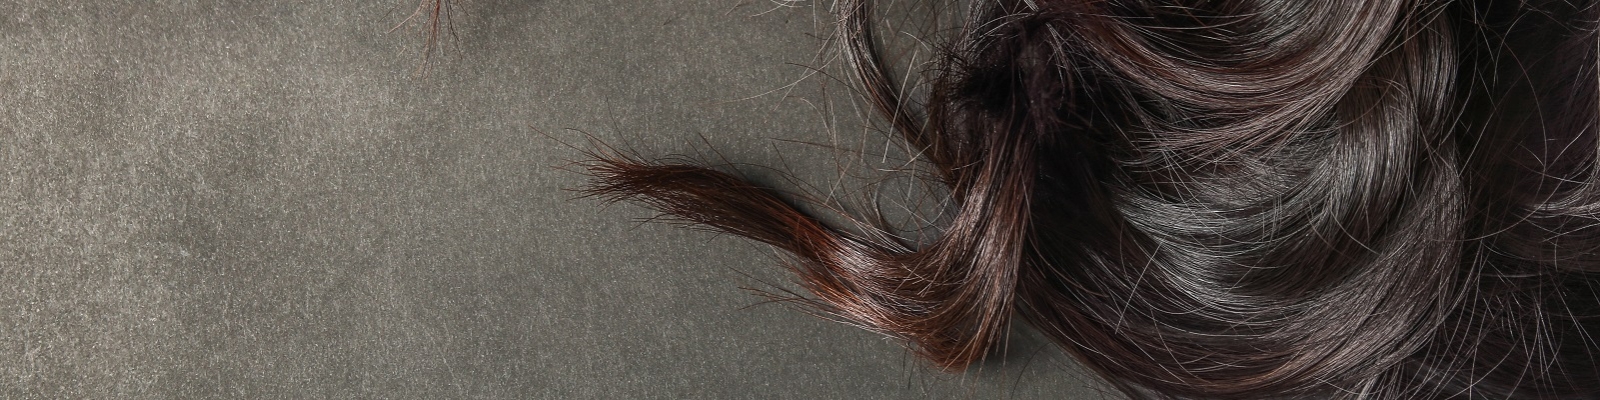 К чему снятся волосы? Сонник волосы :: Толкование снов онлайн на Сонариум